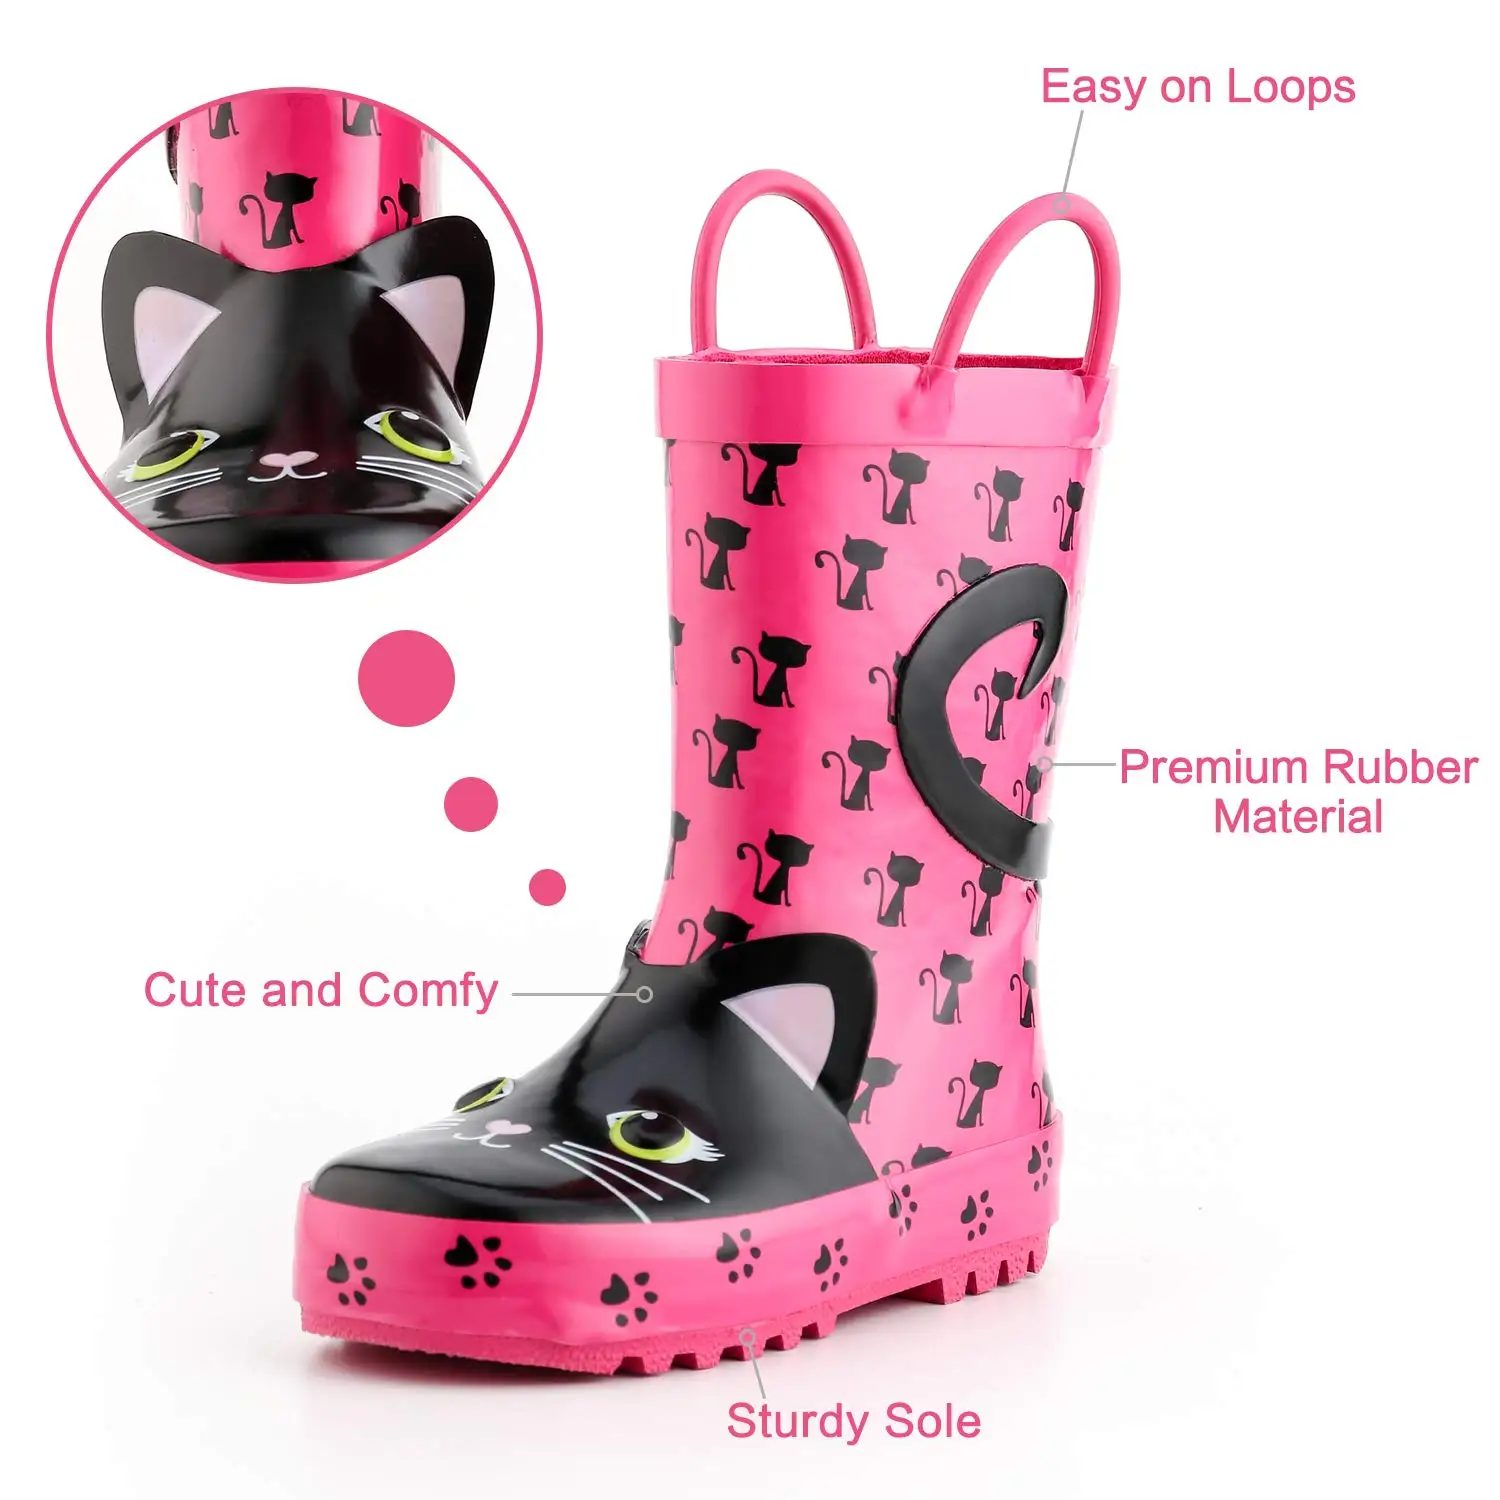 KushyShoo Vaikams Lietaus Batai Mergina Guminiai Batai su 3D Rožinė Kačių Modelius Vaikų Puikus Rainboots Vandens Batai Kalosze Dla Dzieci